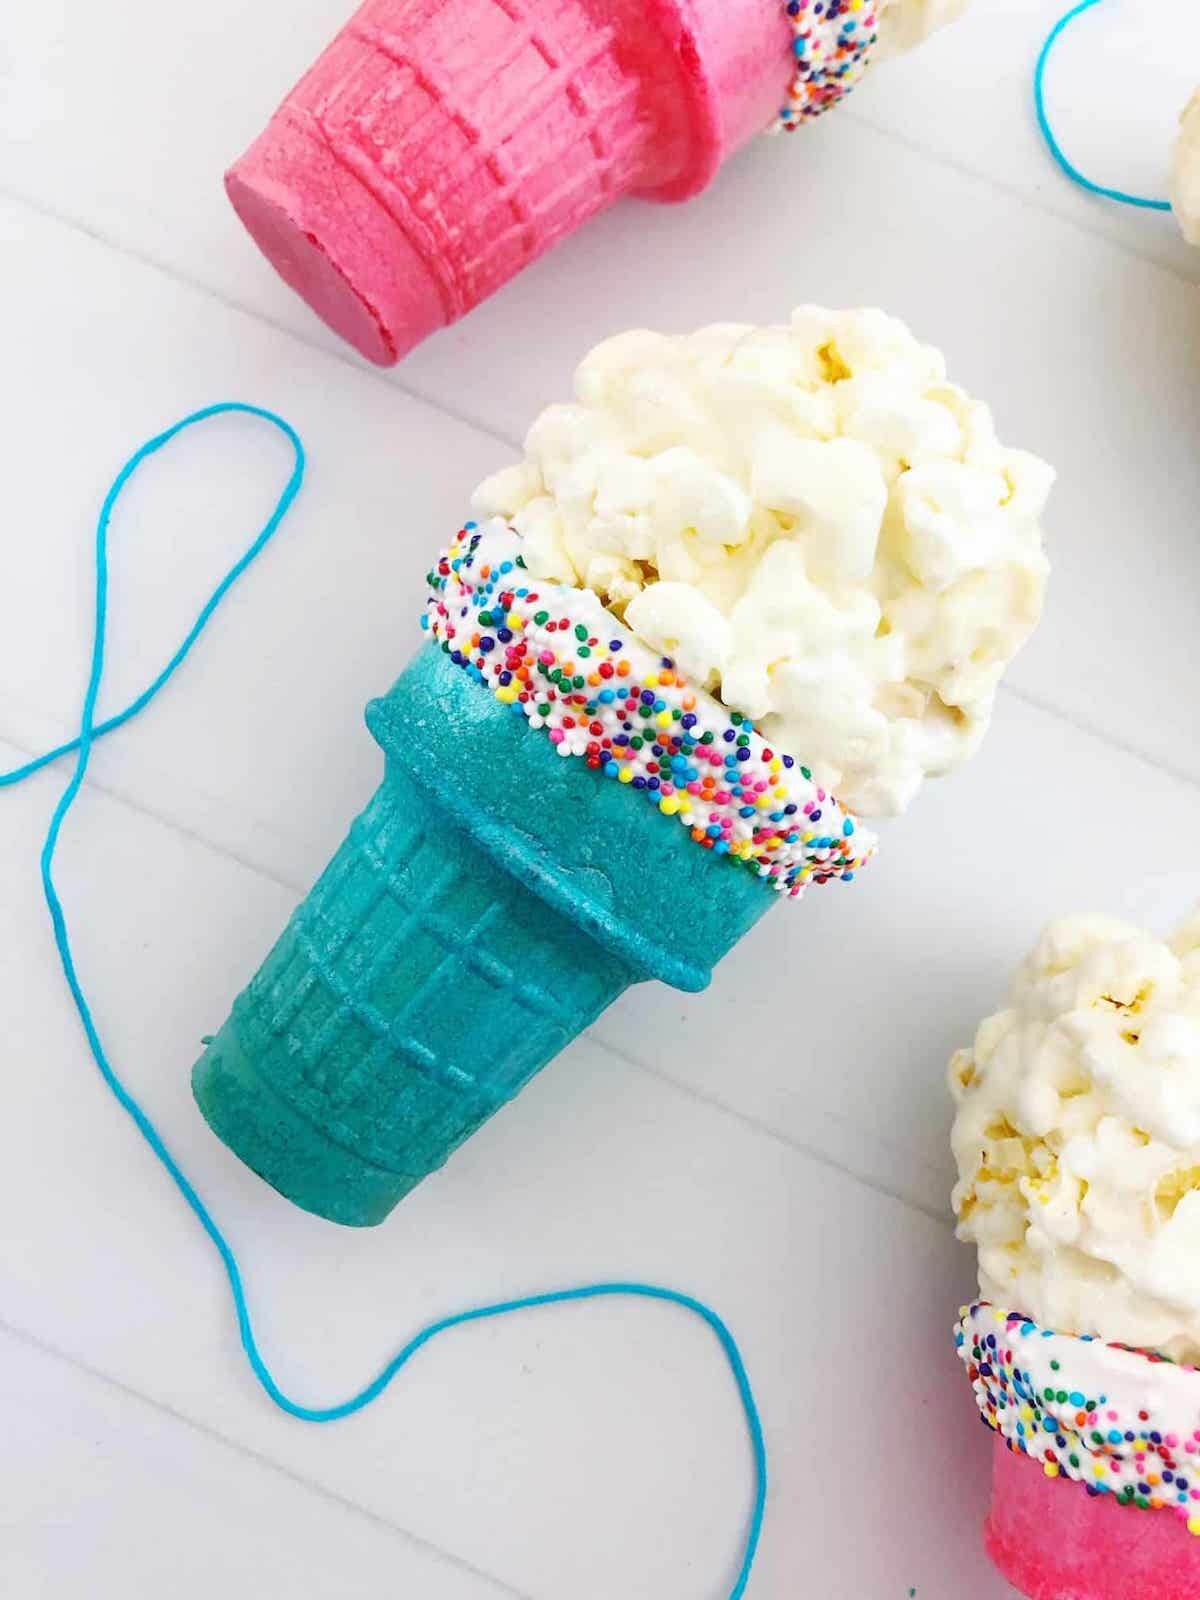 Popcorn ball ice cream cone in blue cone